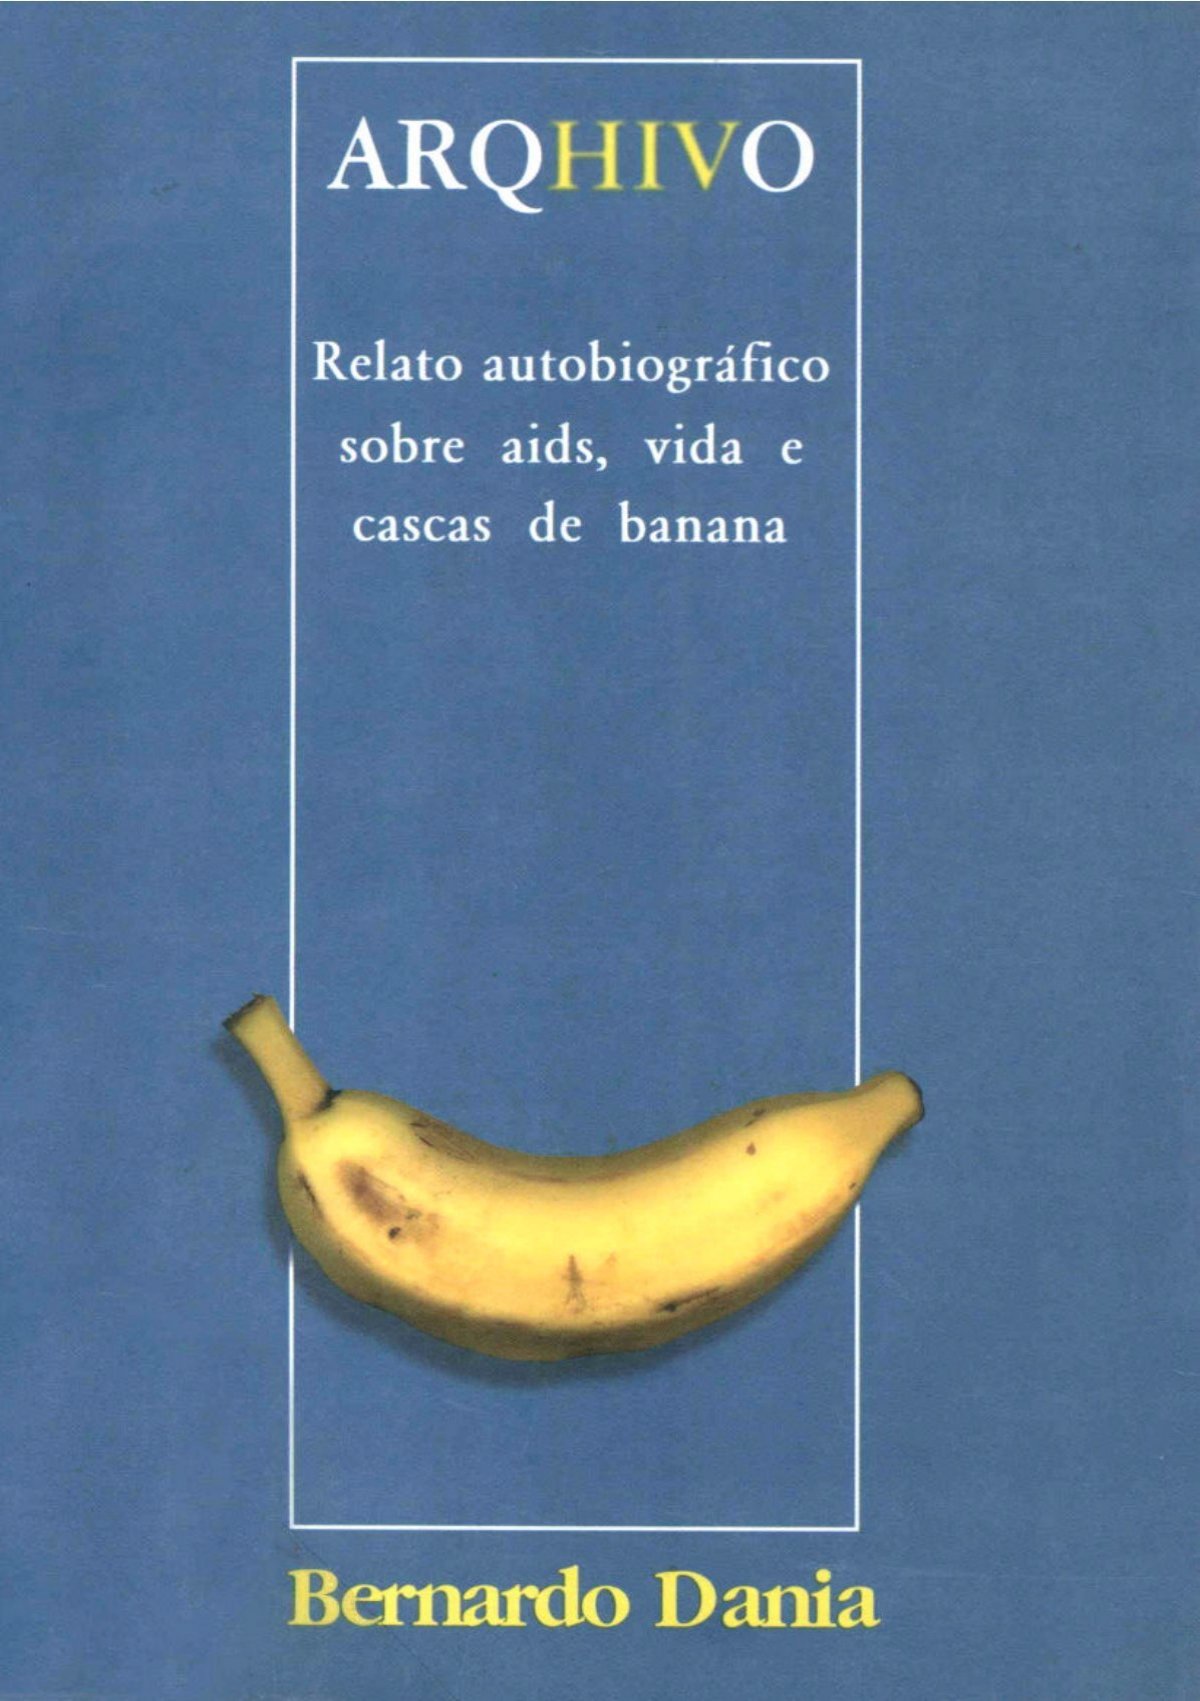 Banana Brasil: sócia proprietária cita motivos para “fim” da casa